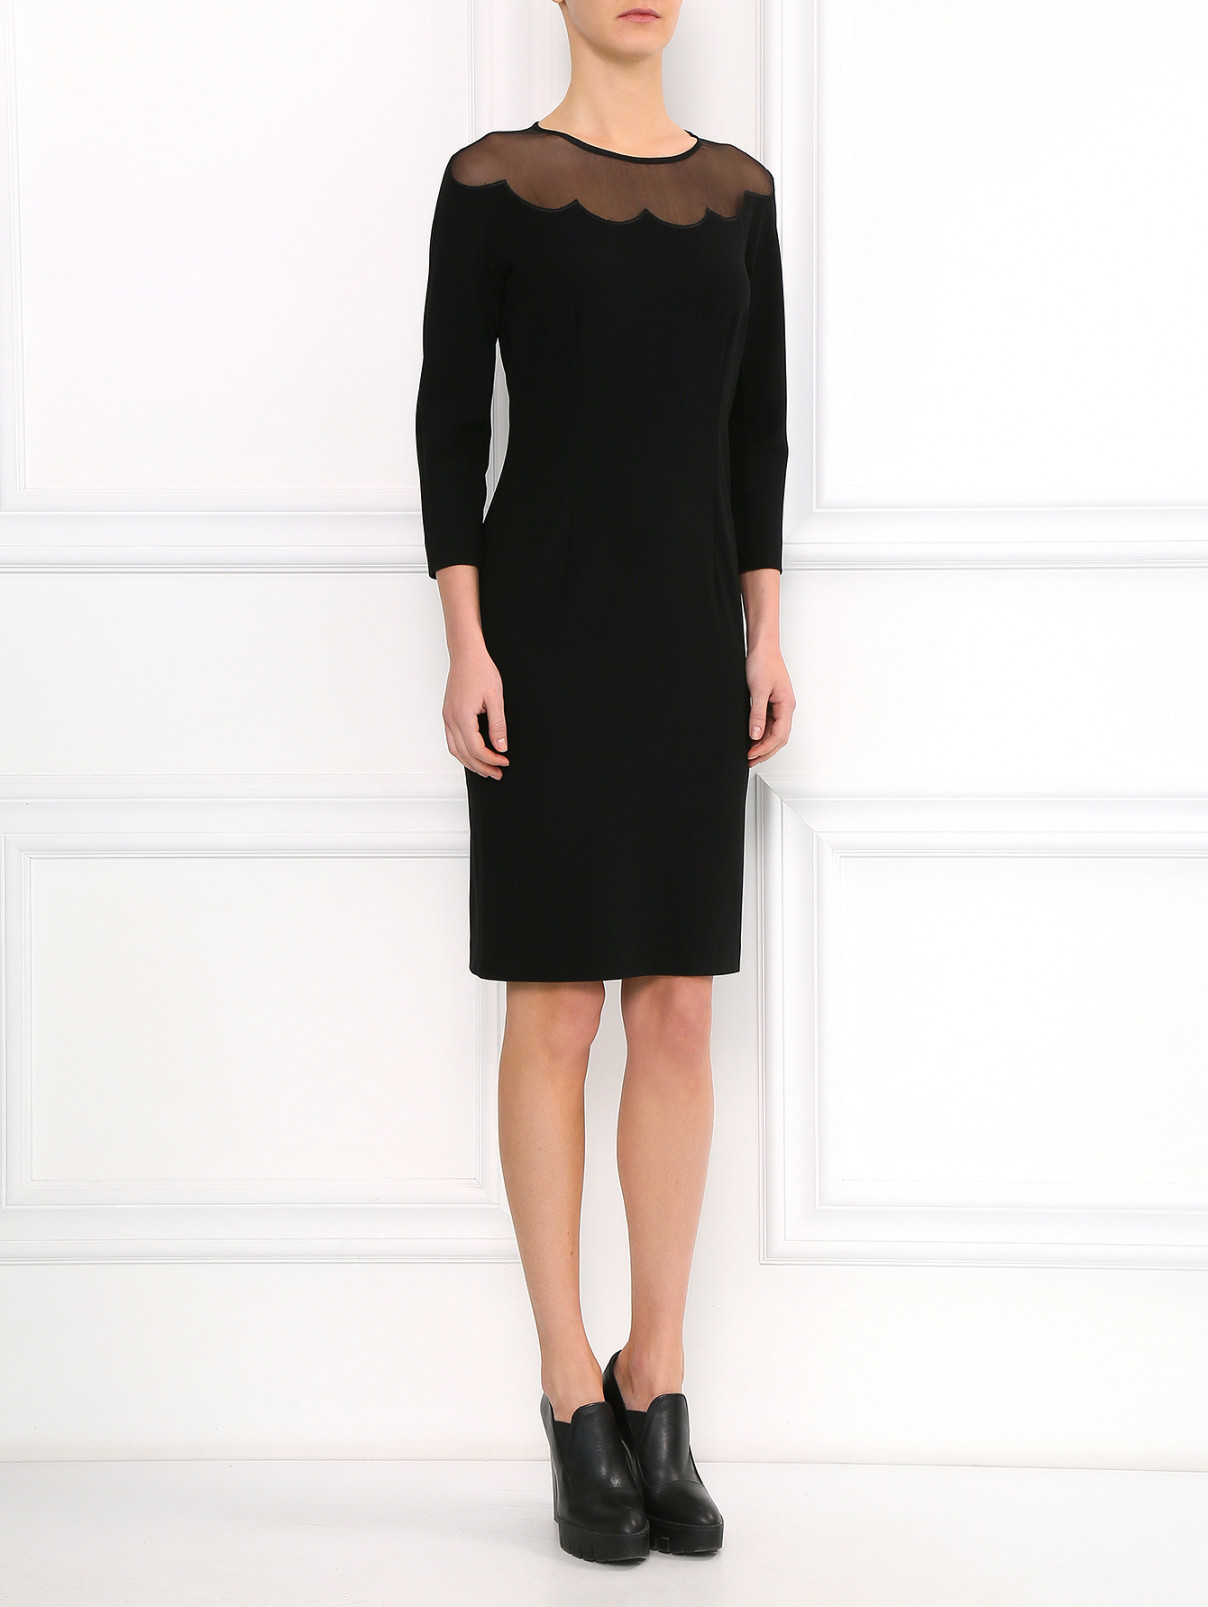 Платье-футляр с отделкой из шелка Moschino Cheap&Chic  –  Модель Общий вид  – Цвет:  Черный